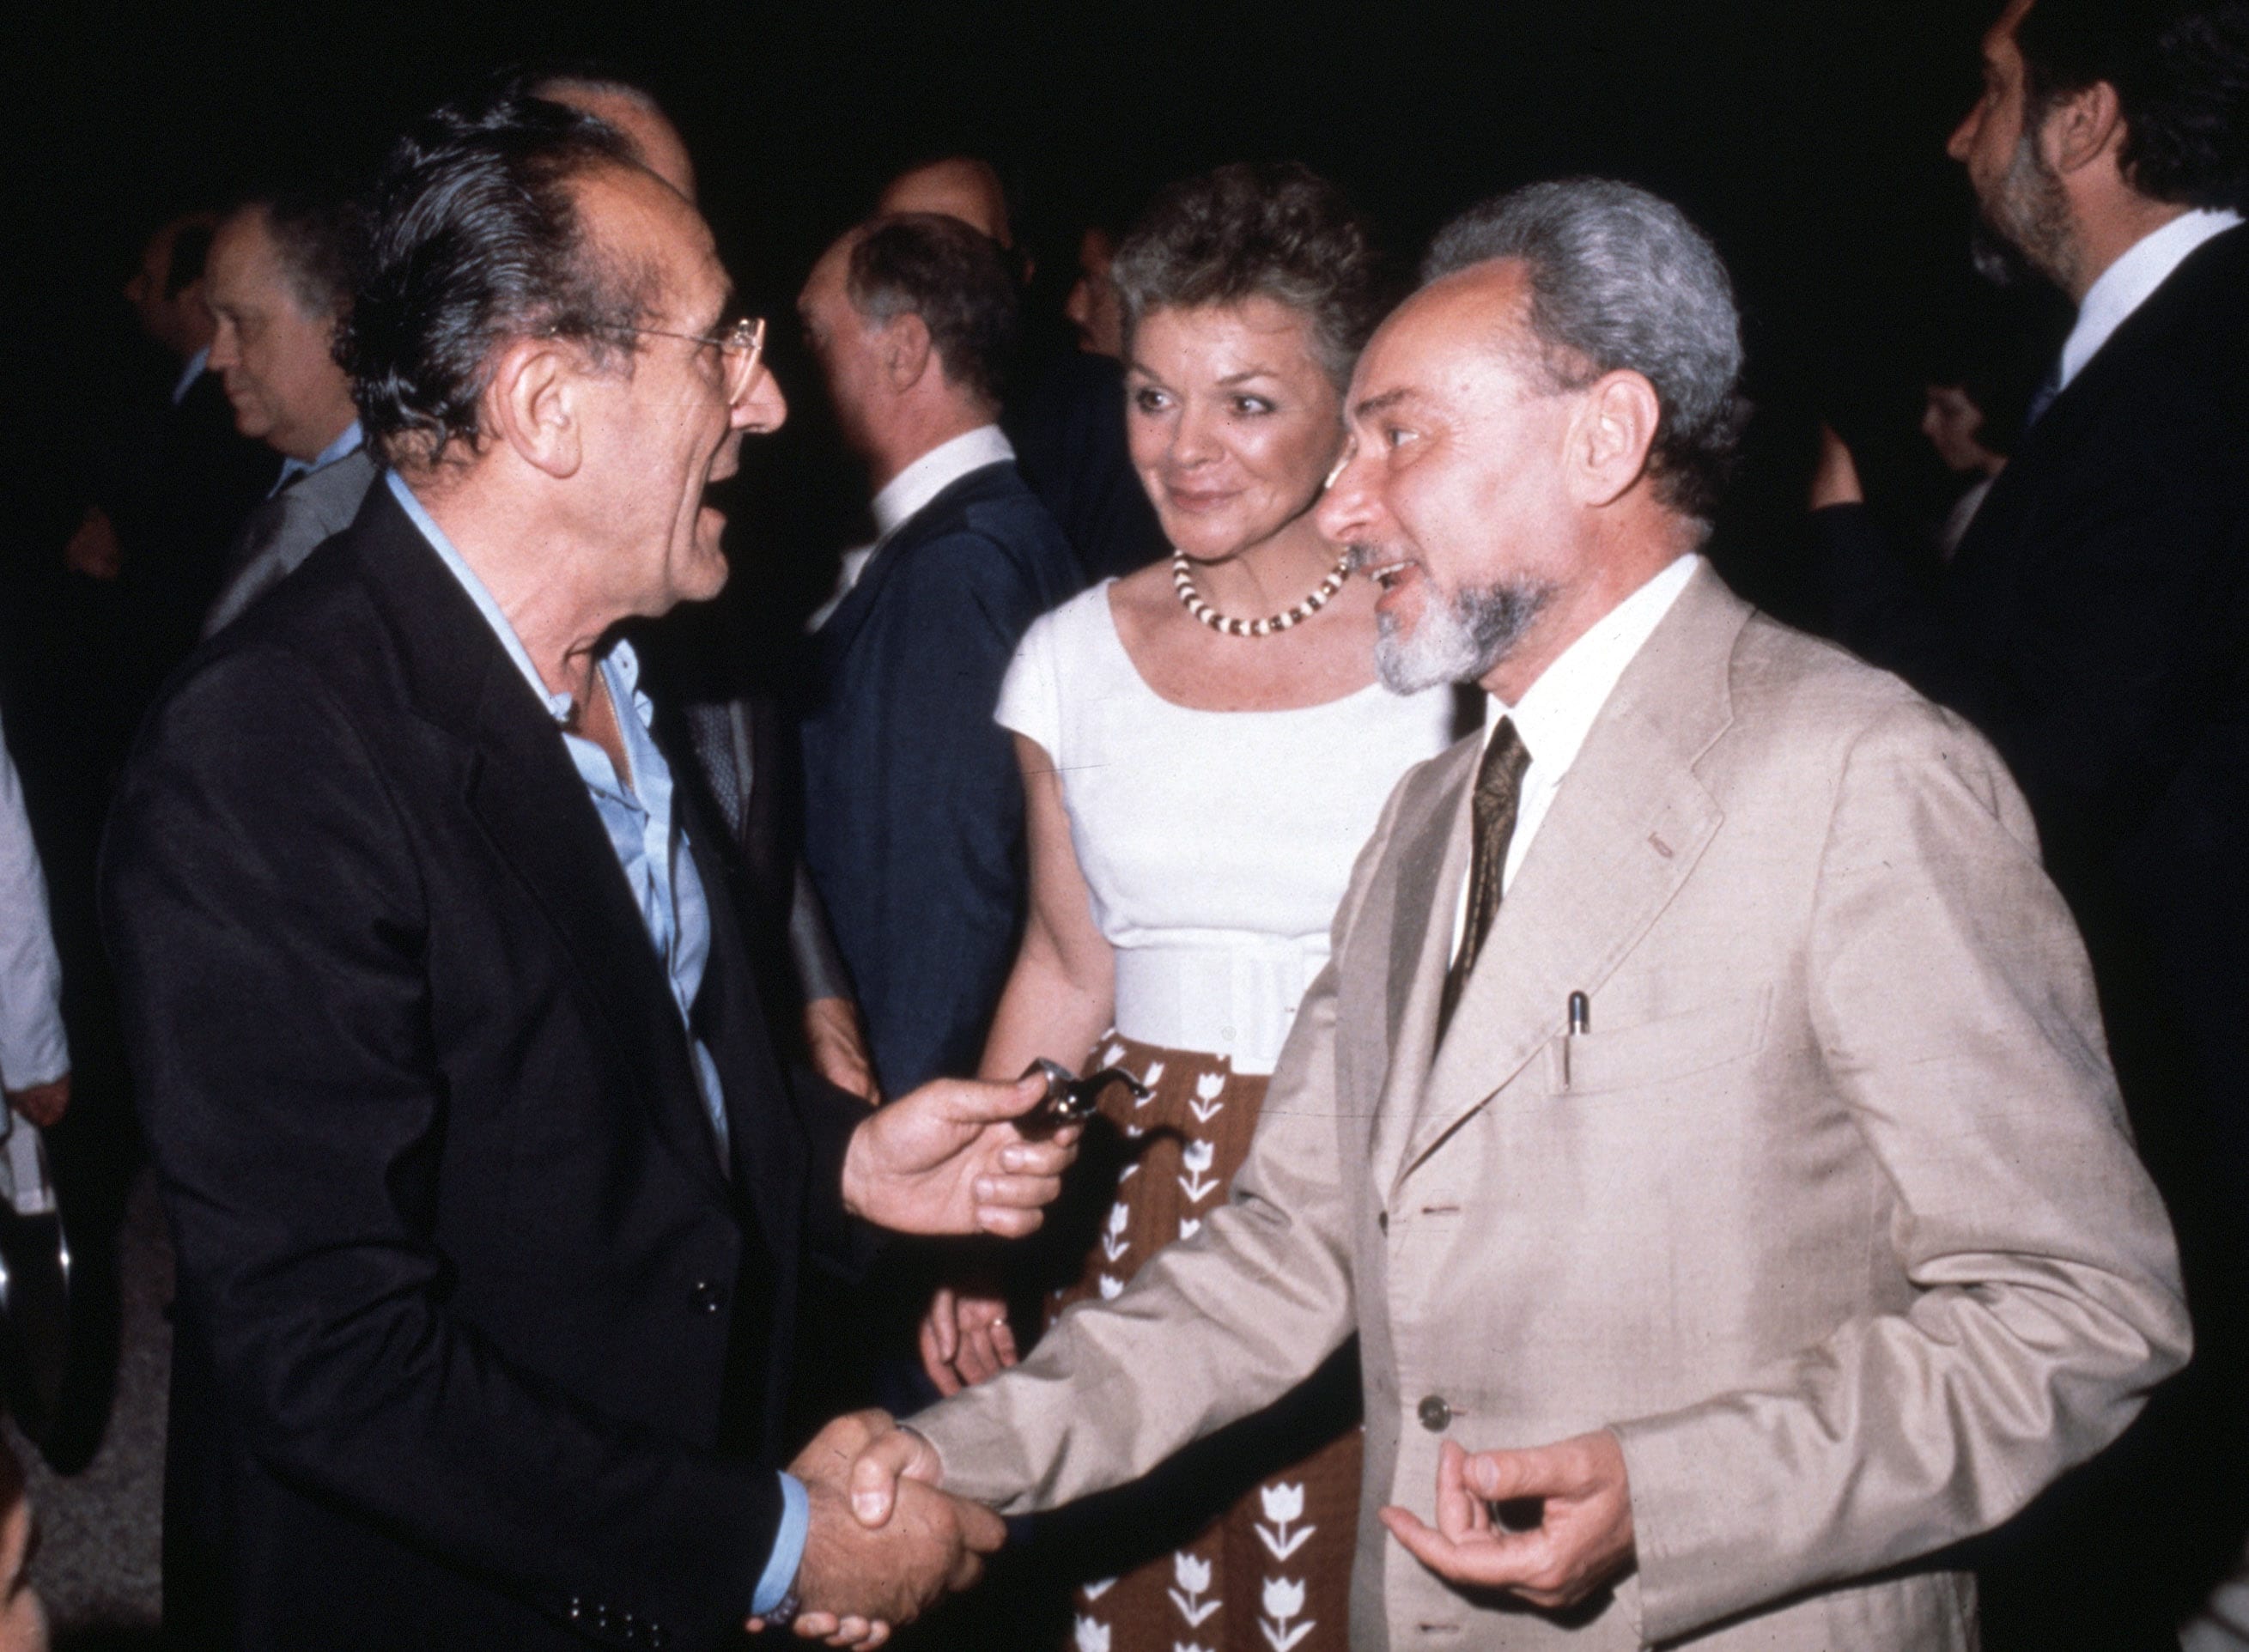 Arnoldo Foà e Primo Levi, vincitore Premio Strega 1979 con il libro La chiave a stella